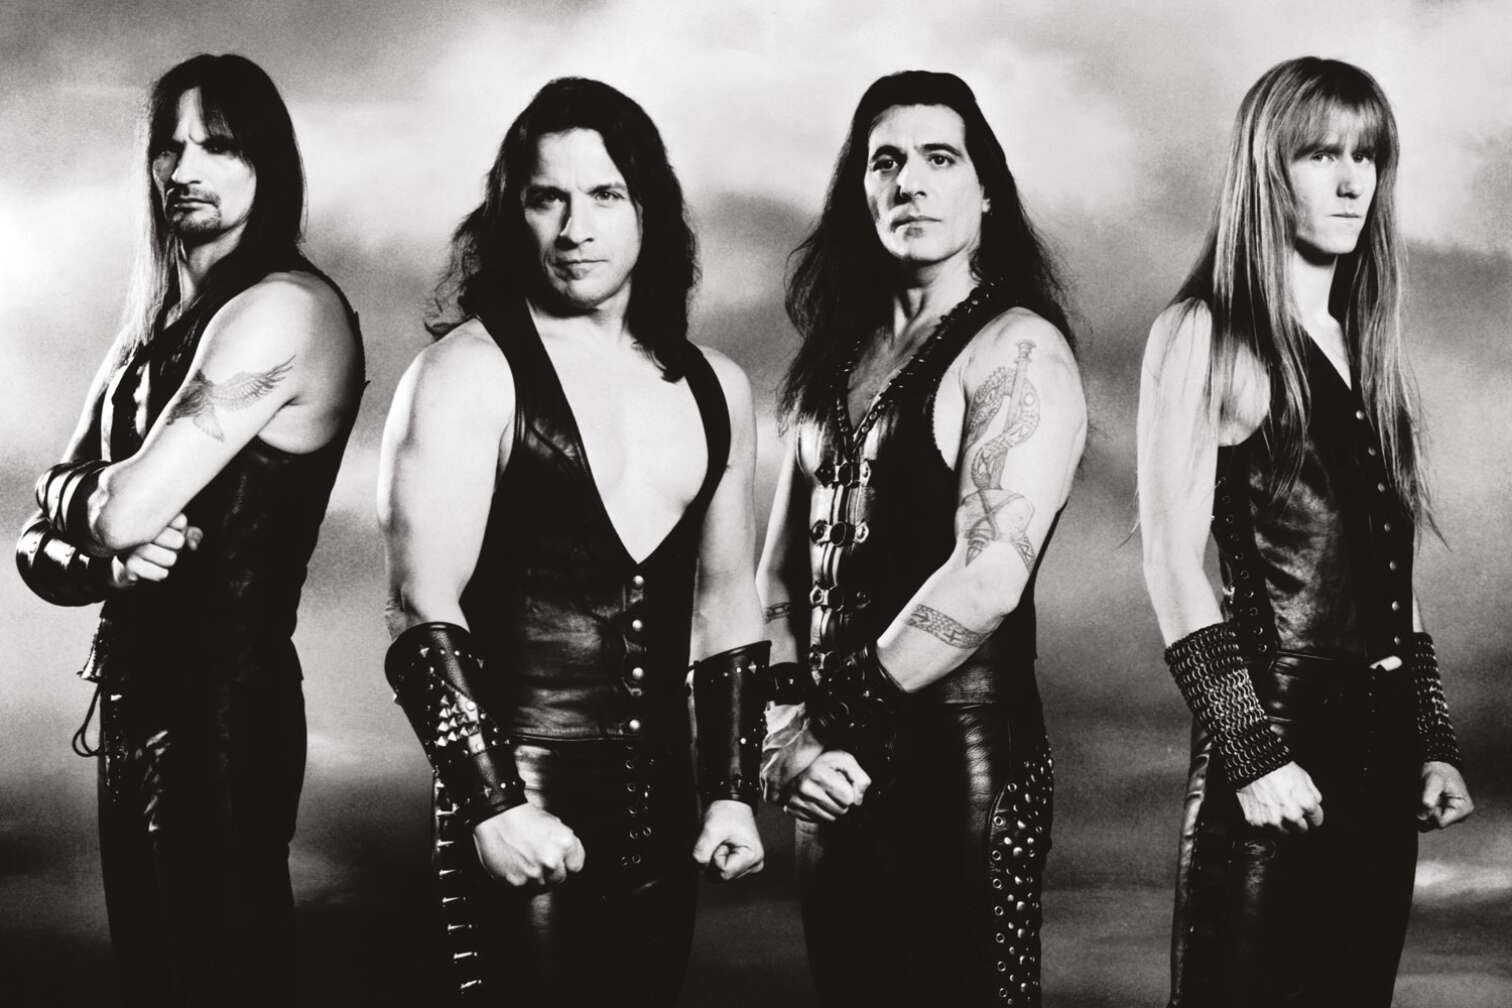 Bandmitglieder der Heavy Metal Band Manowar posieren im Lederoutfit